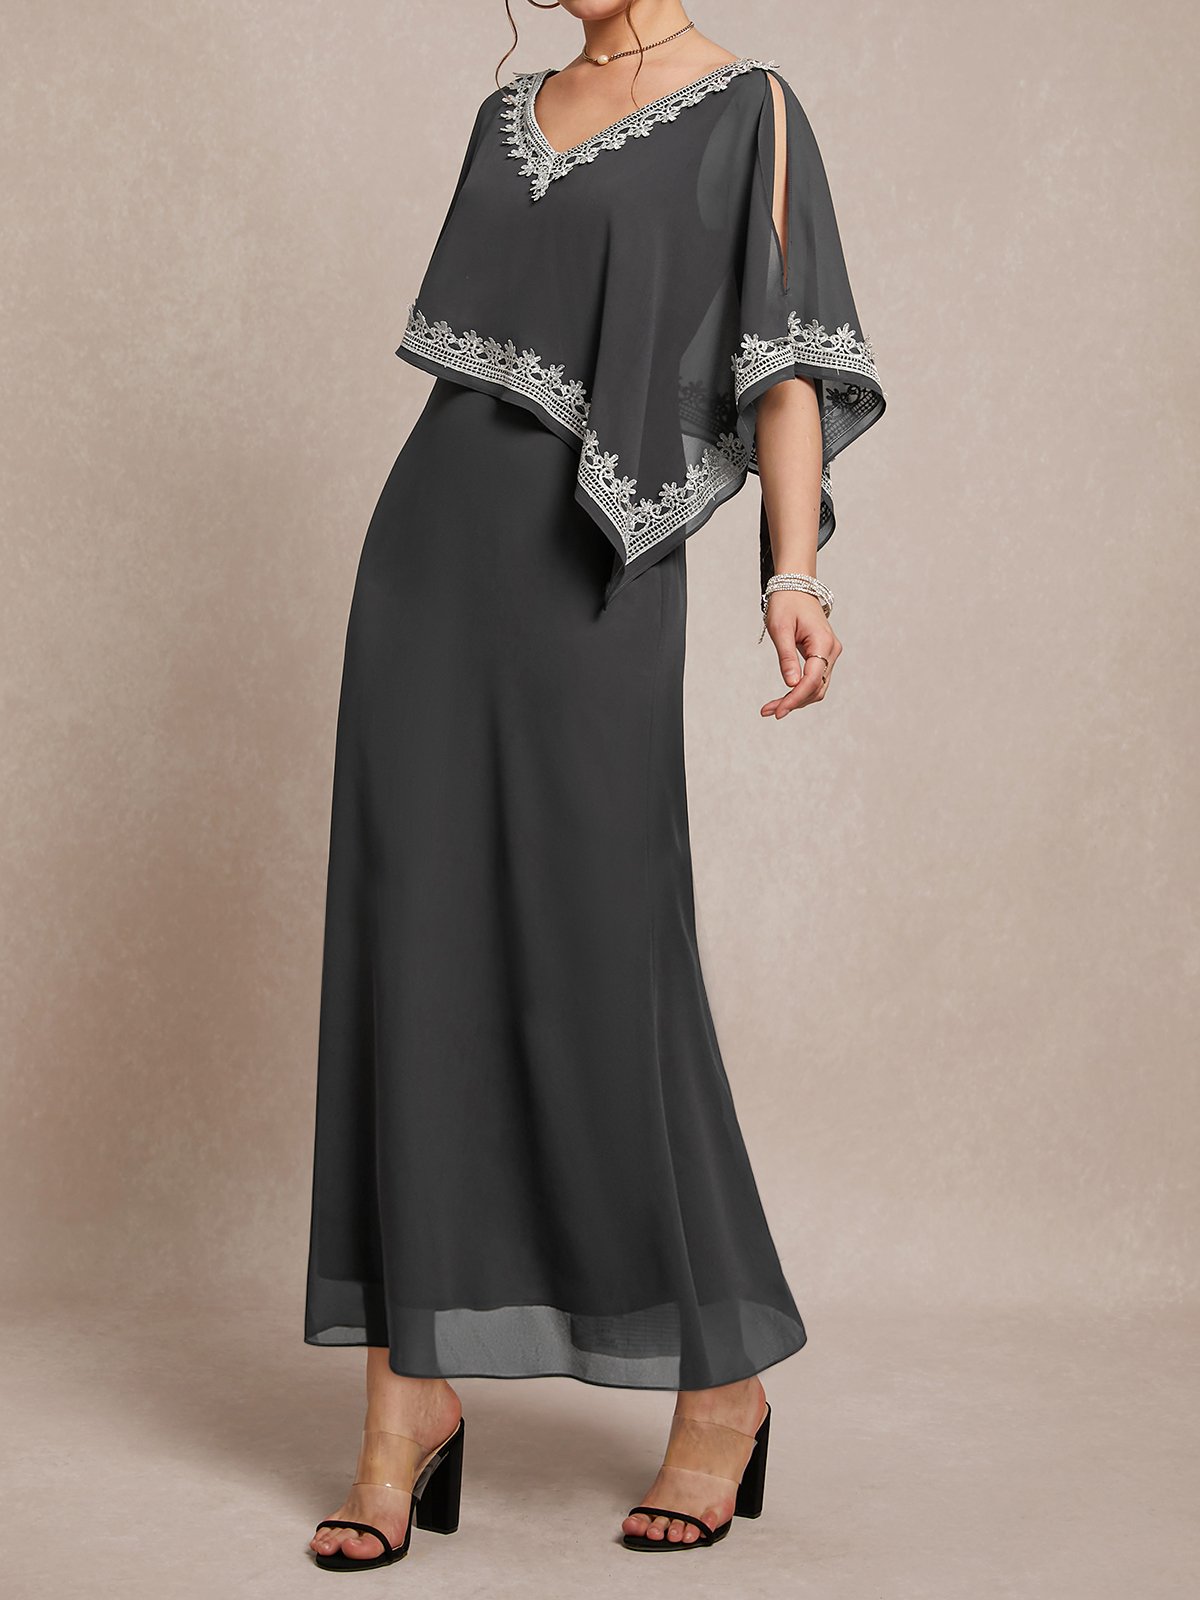 Irregulär Handwerkskunst Elegant Chiffon V-Ausschnitt Kleid